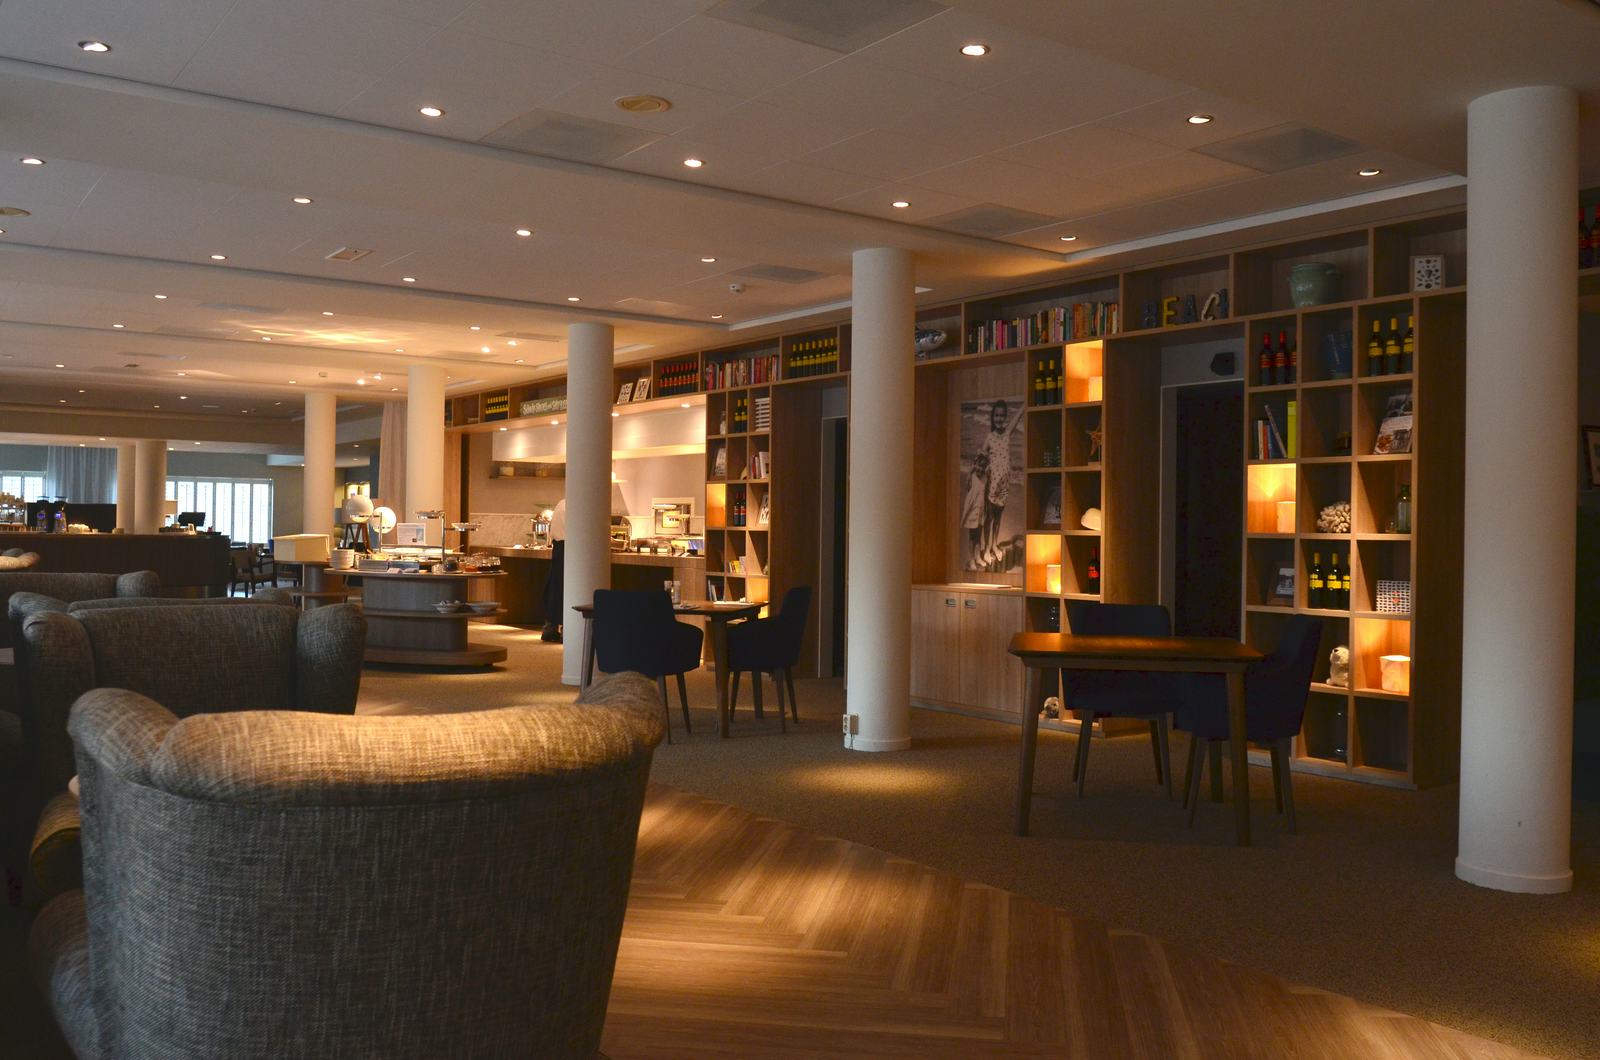 Binnenkijken bij vernieuwd restaurant Hotel Opduin - Texel